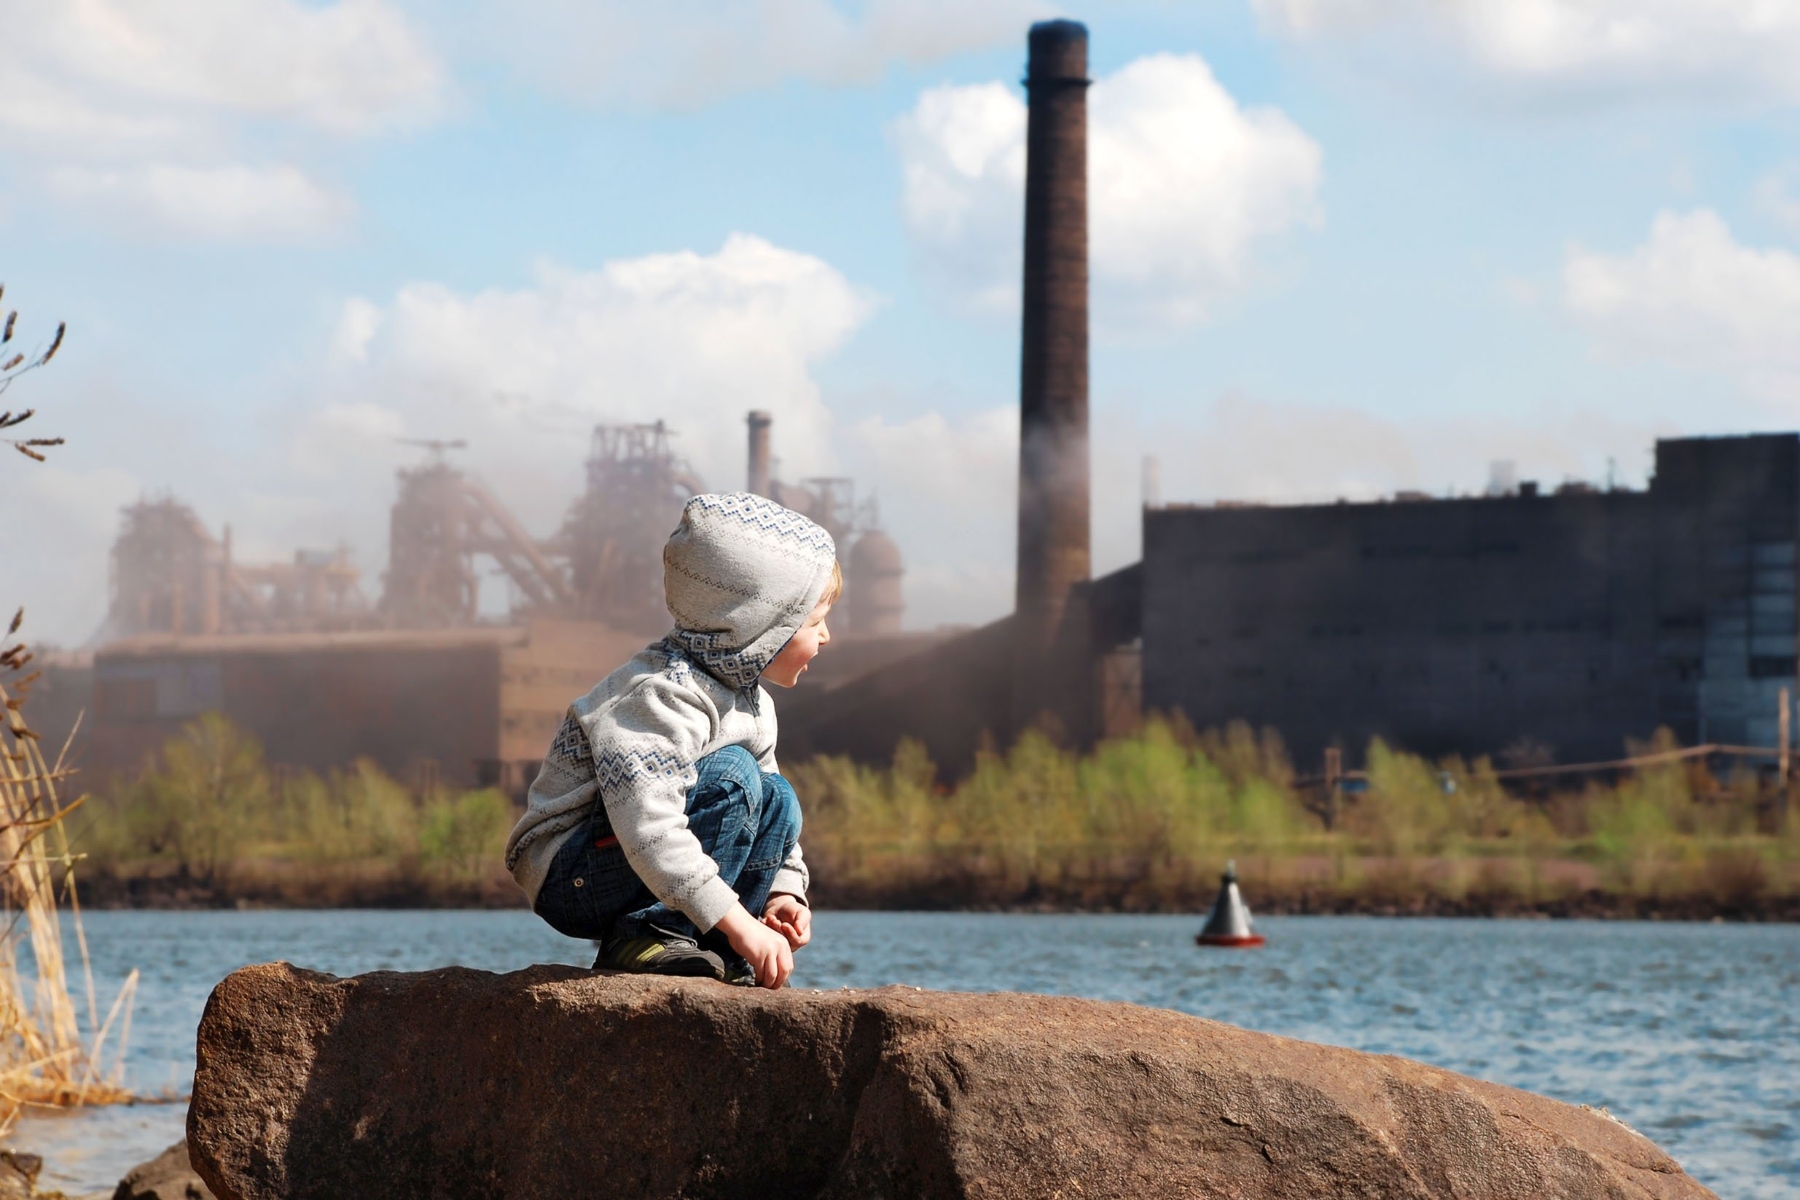 Άσθμα ατμοσφαιρική ρύπανση: Το διοξείδιο αζώτου θέτει το αναπνευστικό των παιδιών σε κίνδυνο